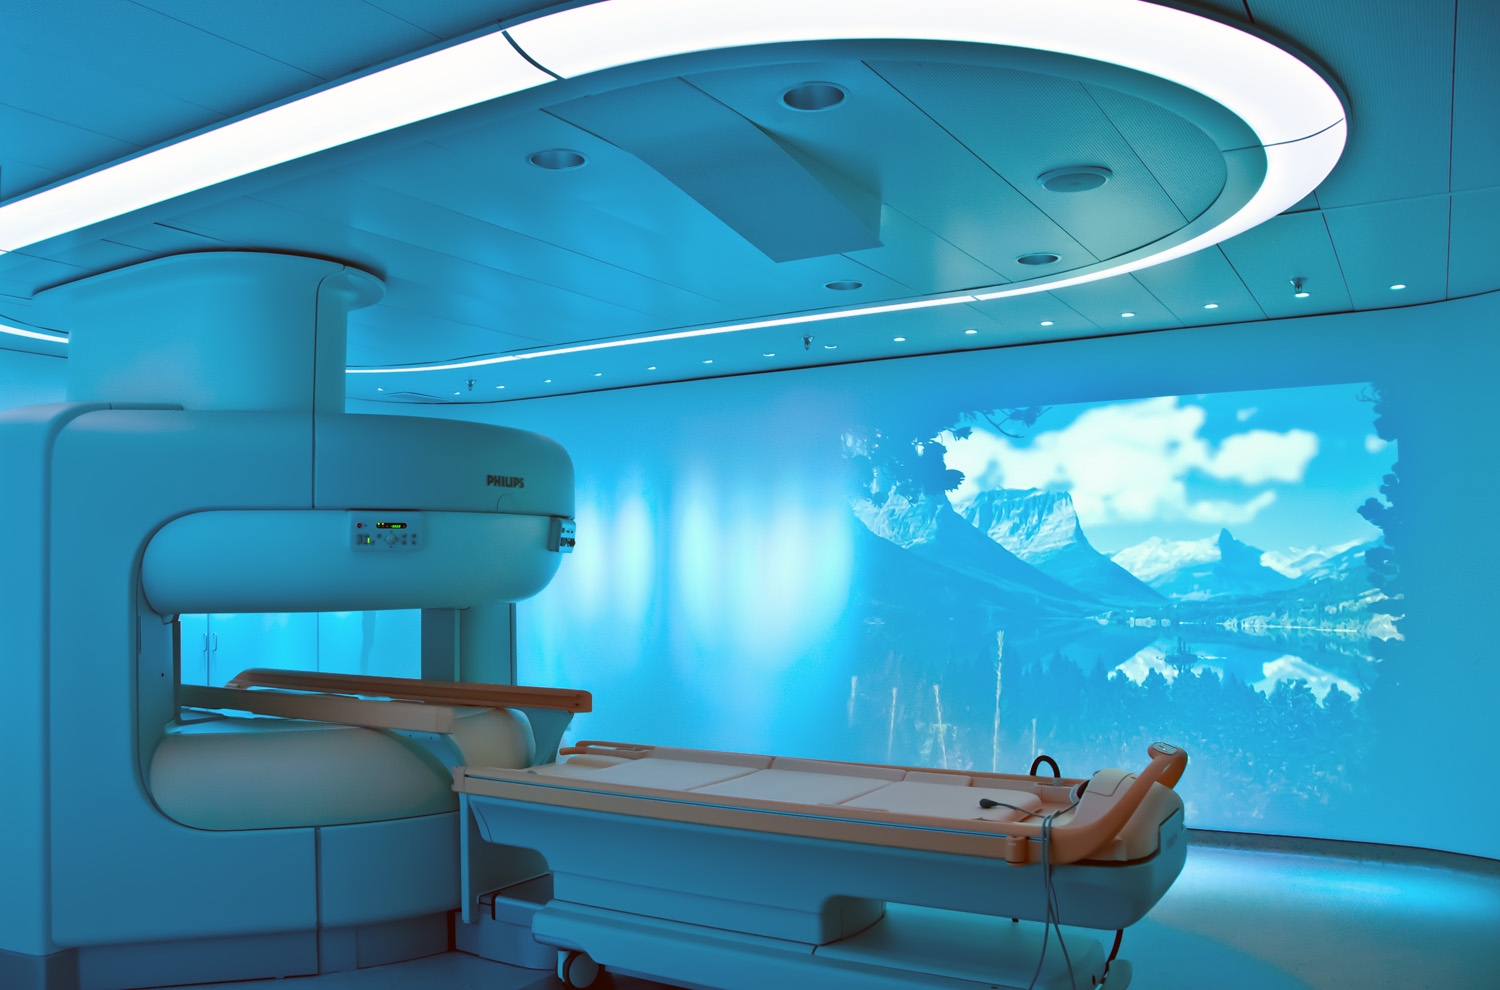 لیست مراکز MRI و سی تی اسکن در شیراز